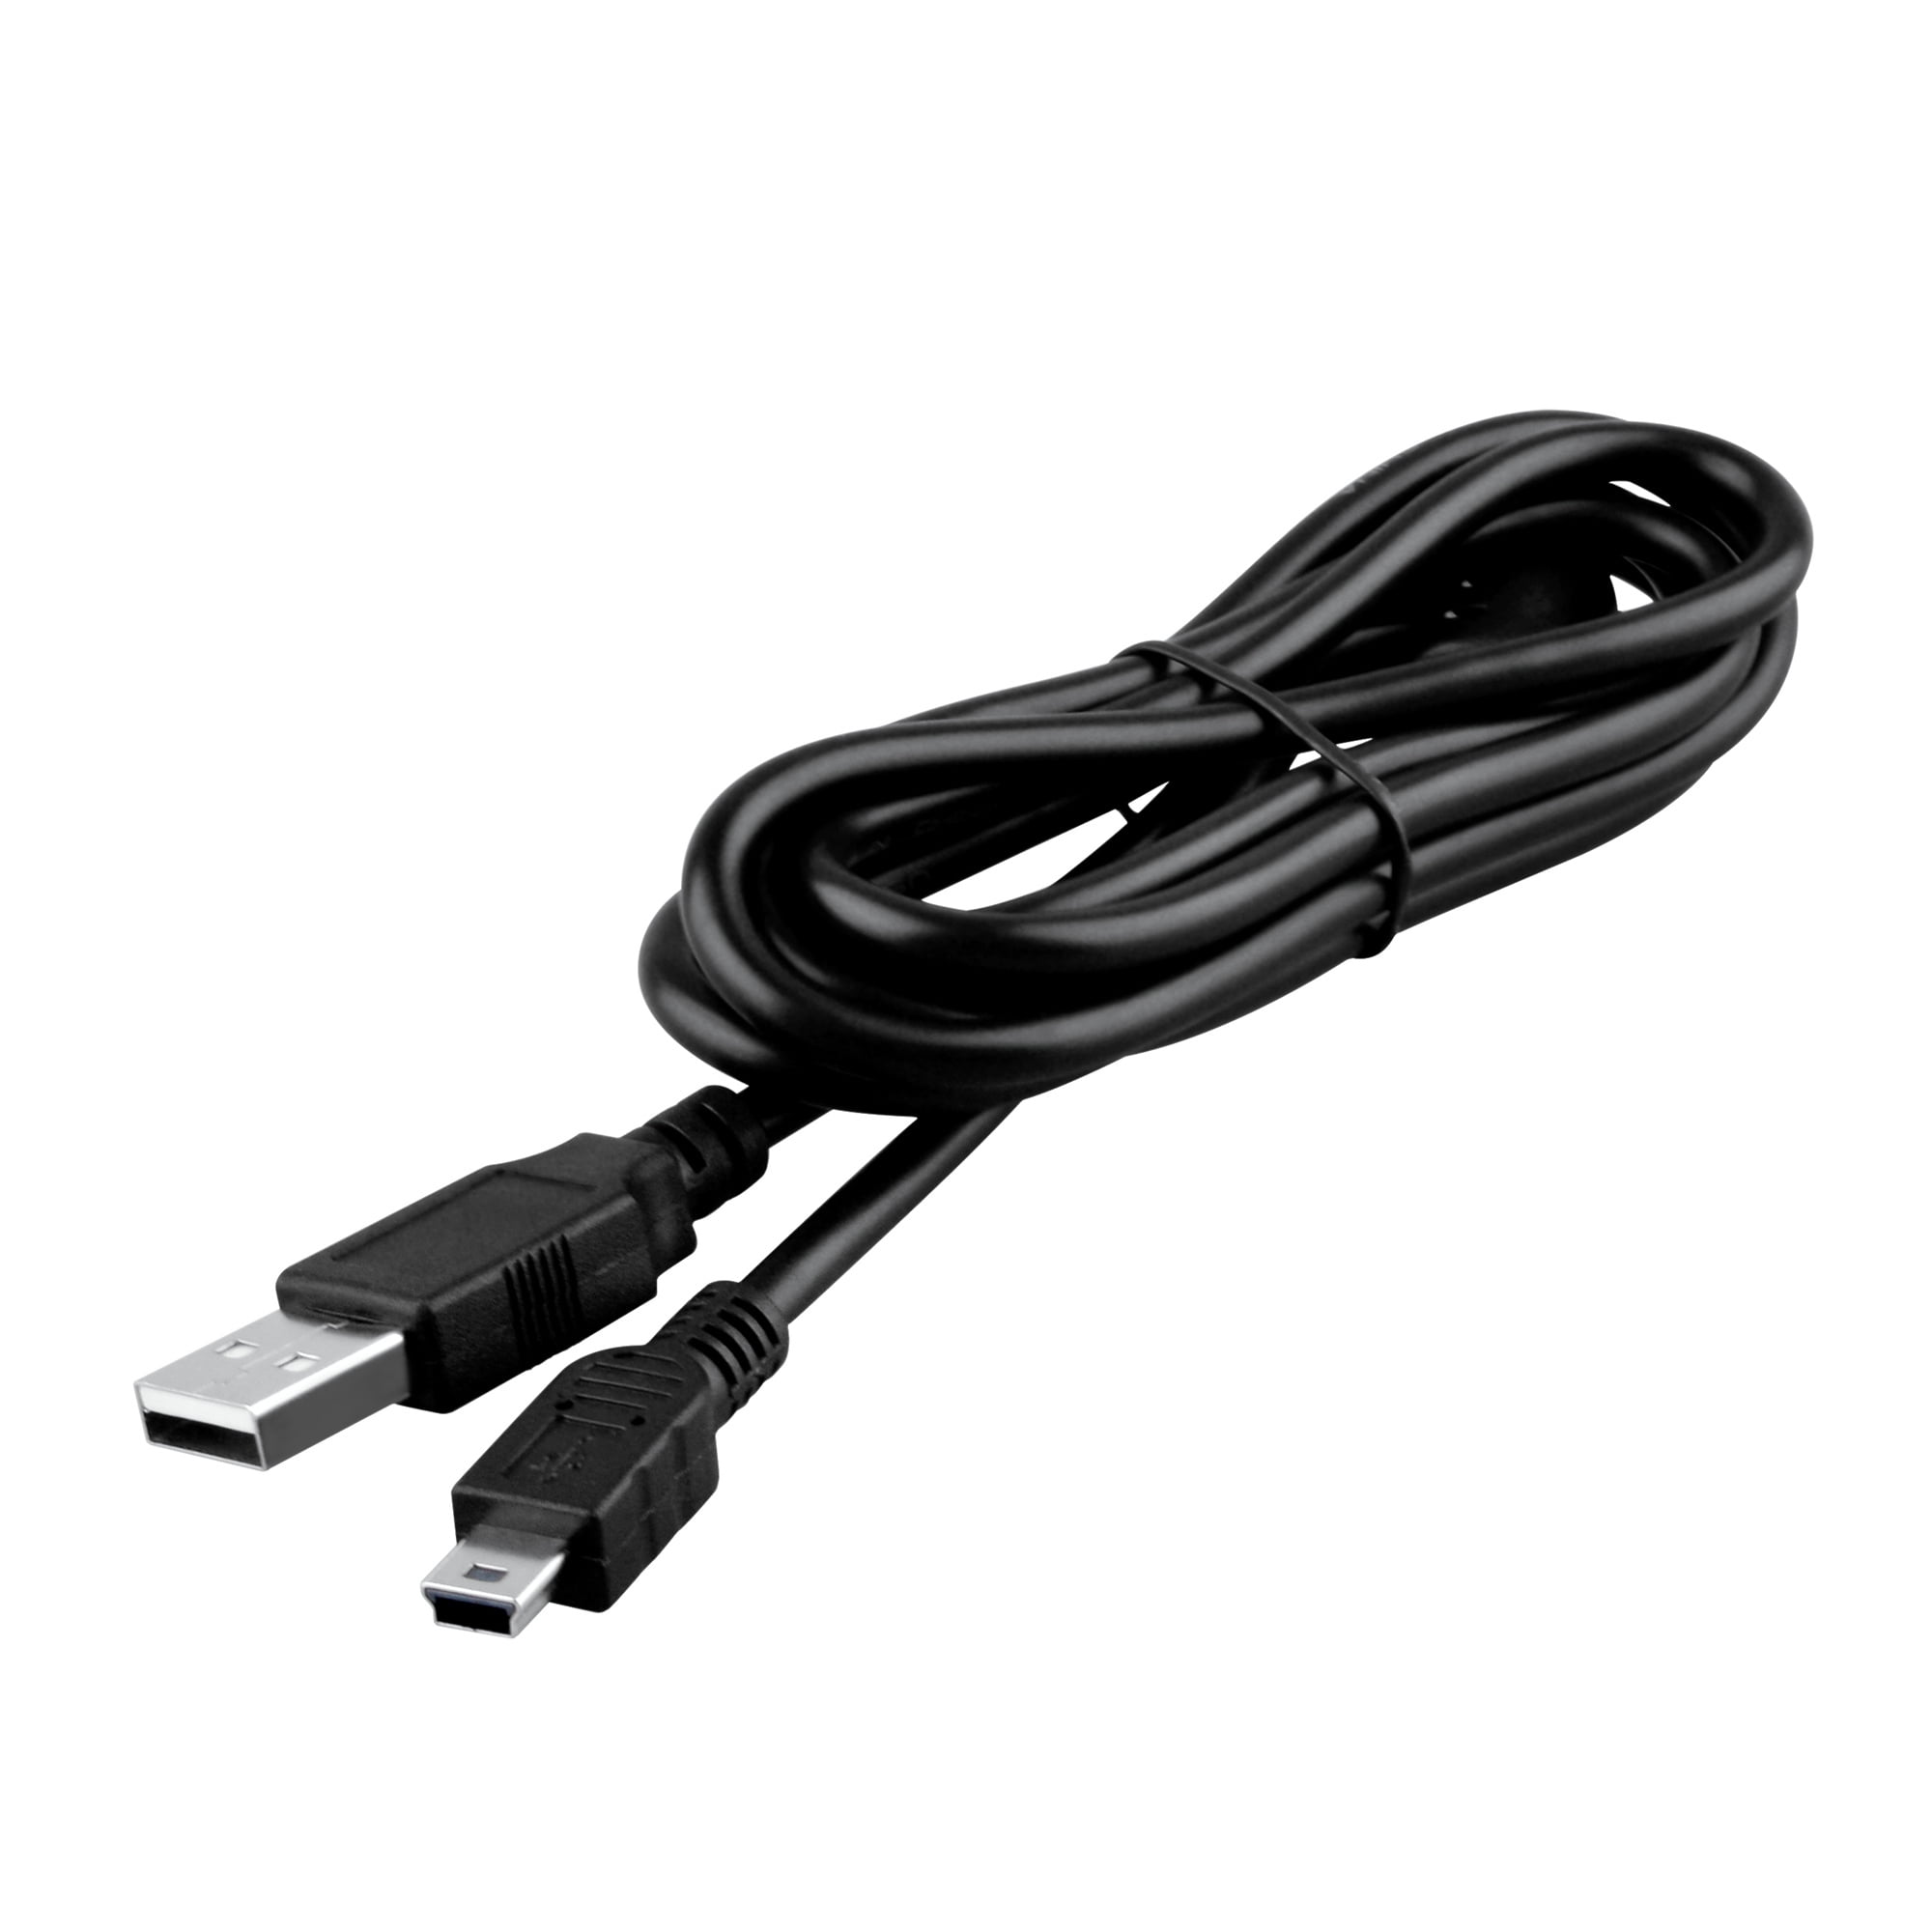 USB 2.0 Data Cable For SmartDisk FireLite 2.5 USBFLB120 USBFLB120-R RF-USBFLB120 